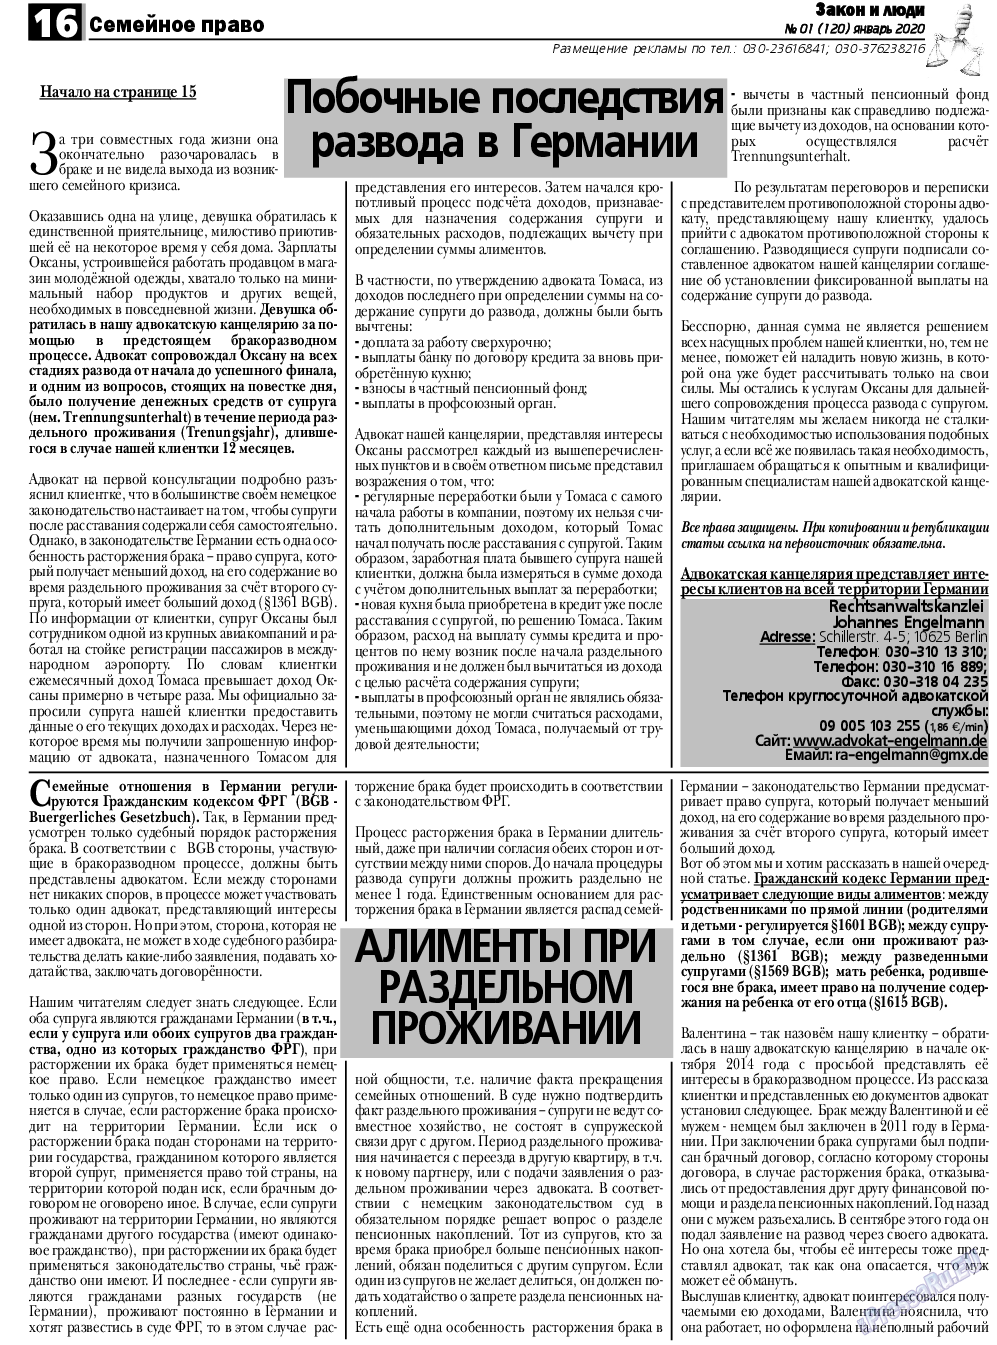 Закон и люди, газета. 2020 №1 стр.16